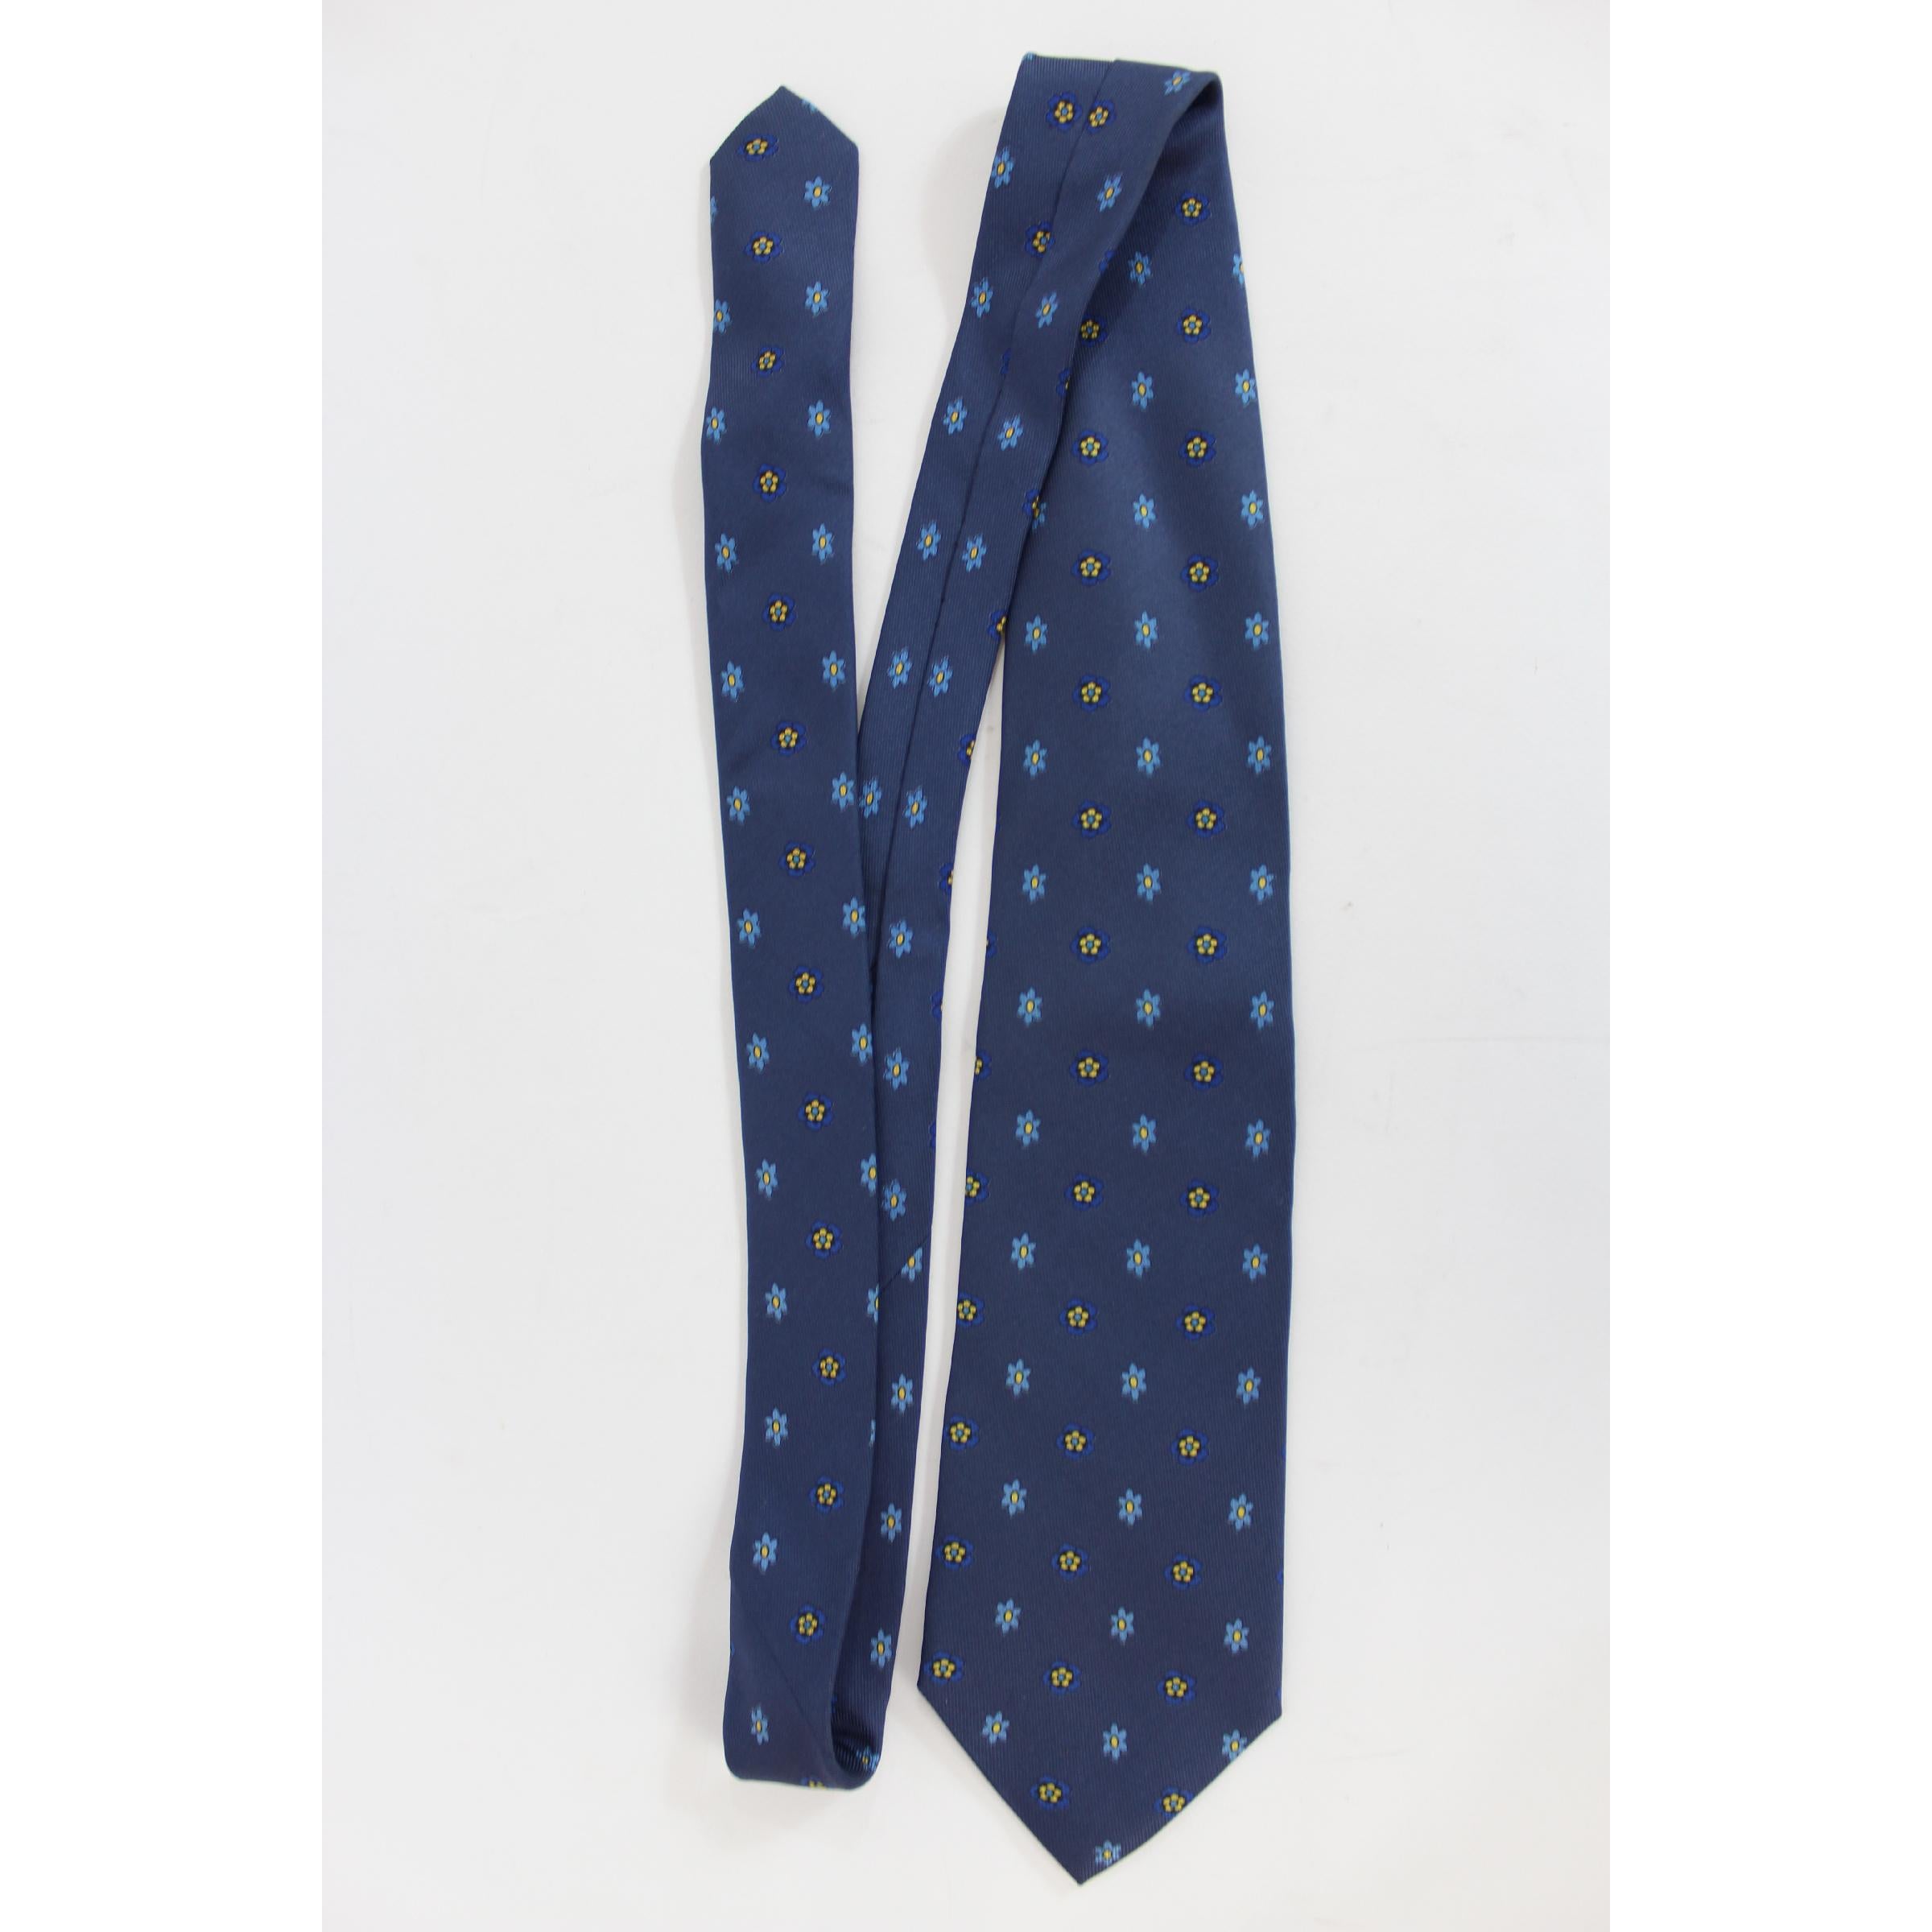 Etro Vintage-Krawatte aus den 1990er Jahren, blaue Farbe mit Blumenmuster, 100% Seide. Hergestellt in Italien.

Länge: 145 cm
Breite: 10 cm